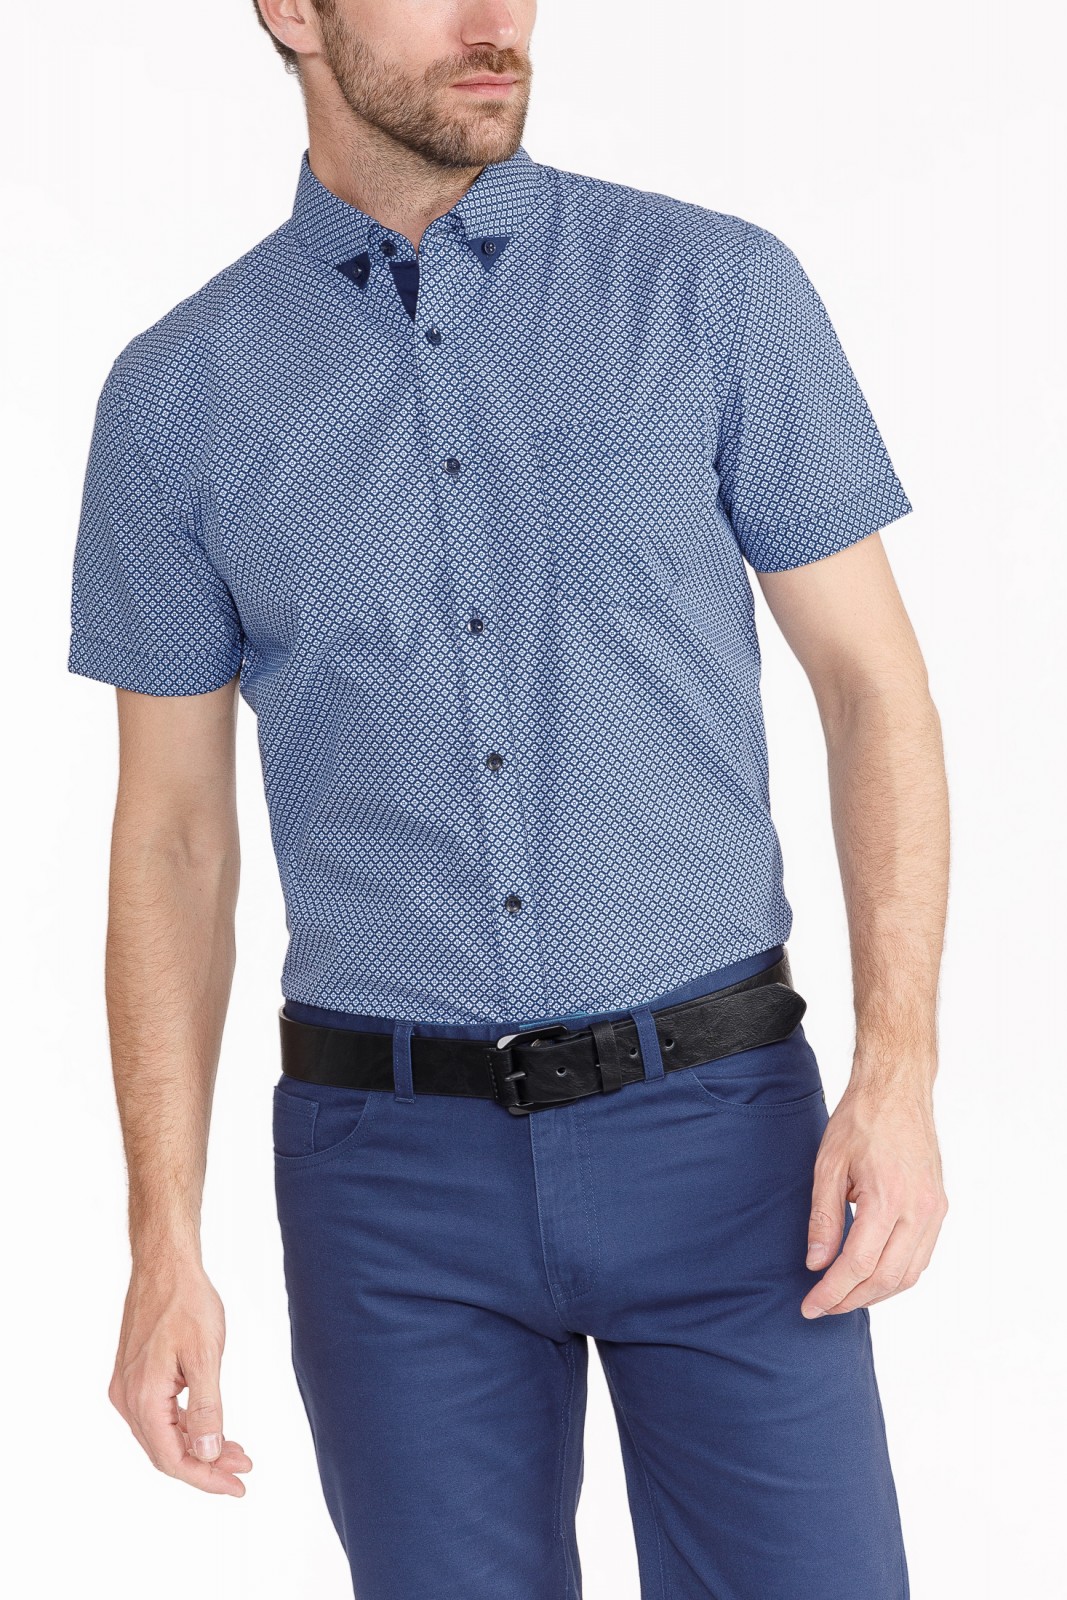 Рубашка с  короткими рукавами zolla 010242259043, цвет голубой, размер S